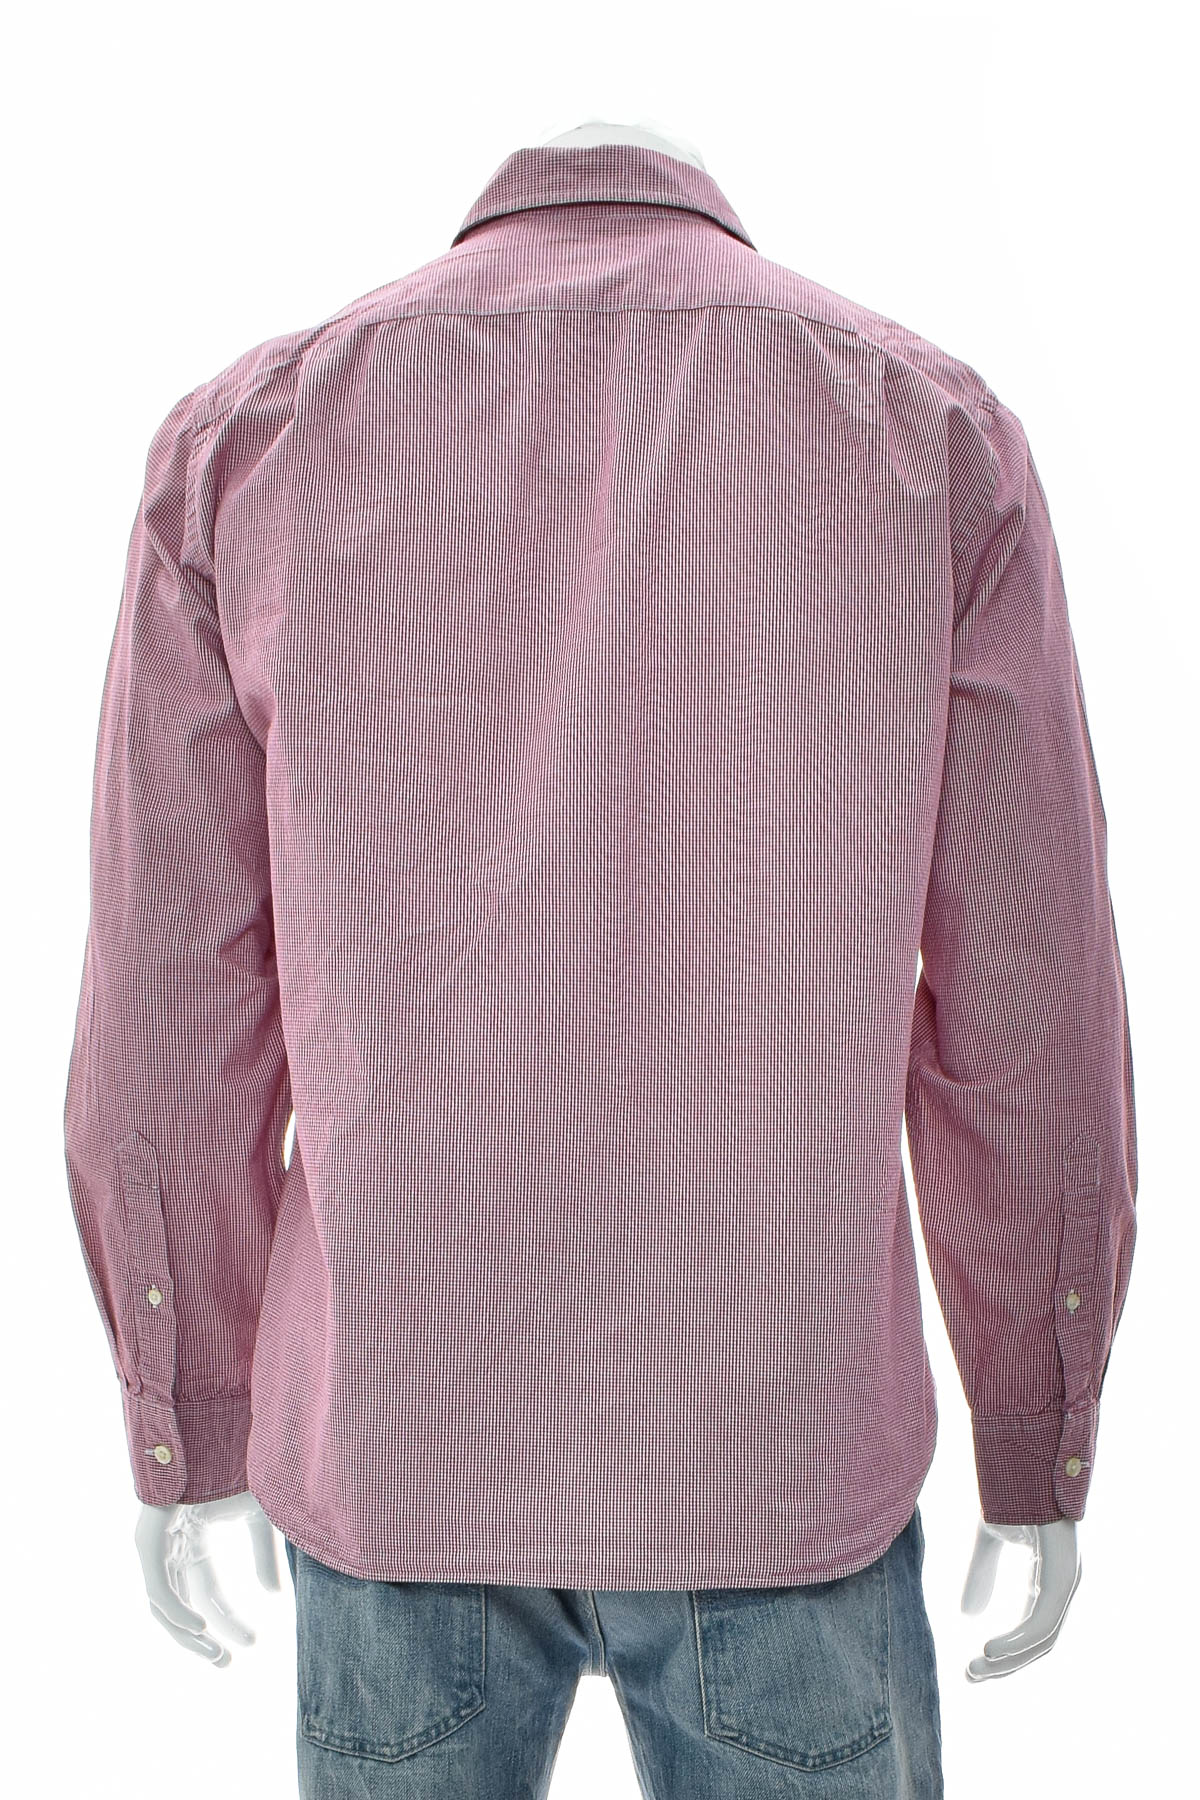 Ανδρικό πουκάμισο - J.CREW - 1